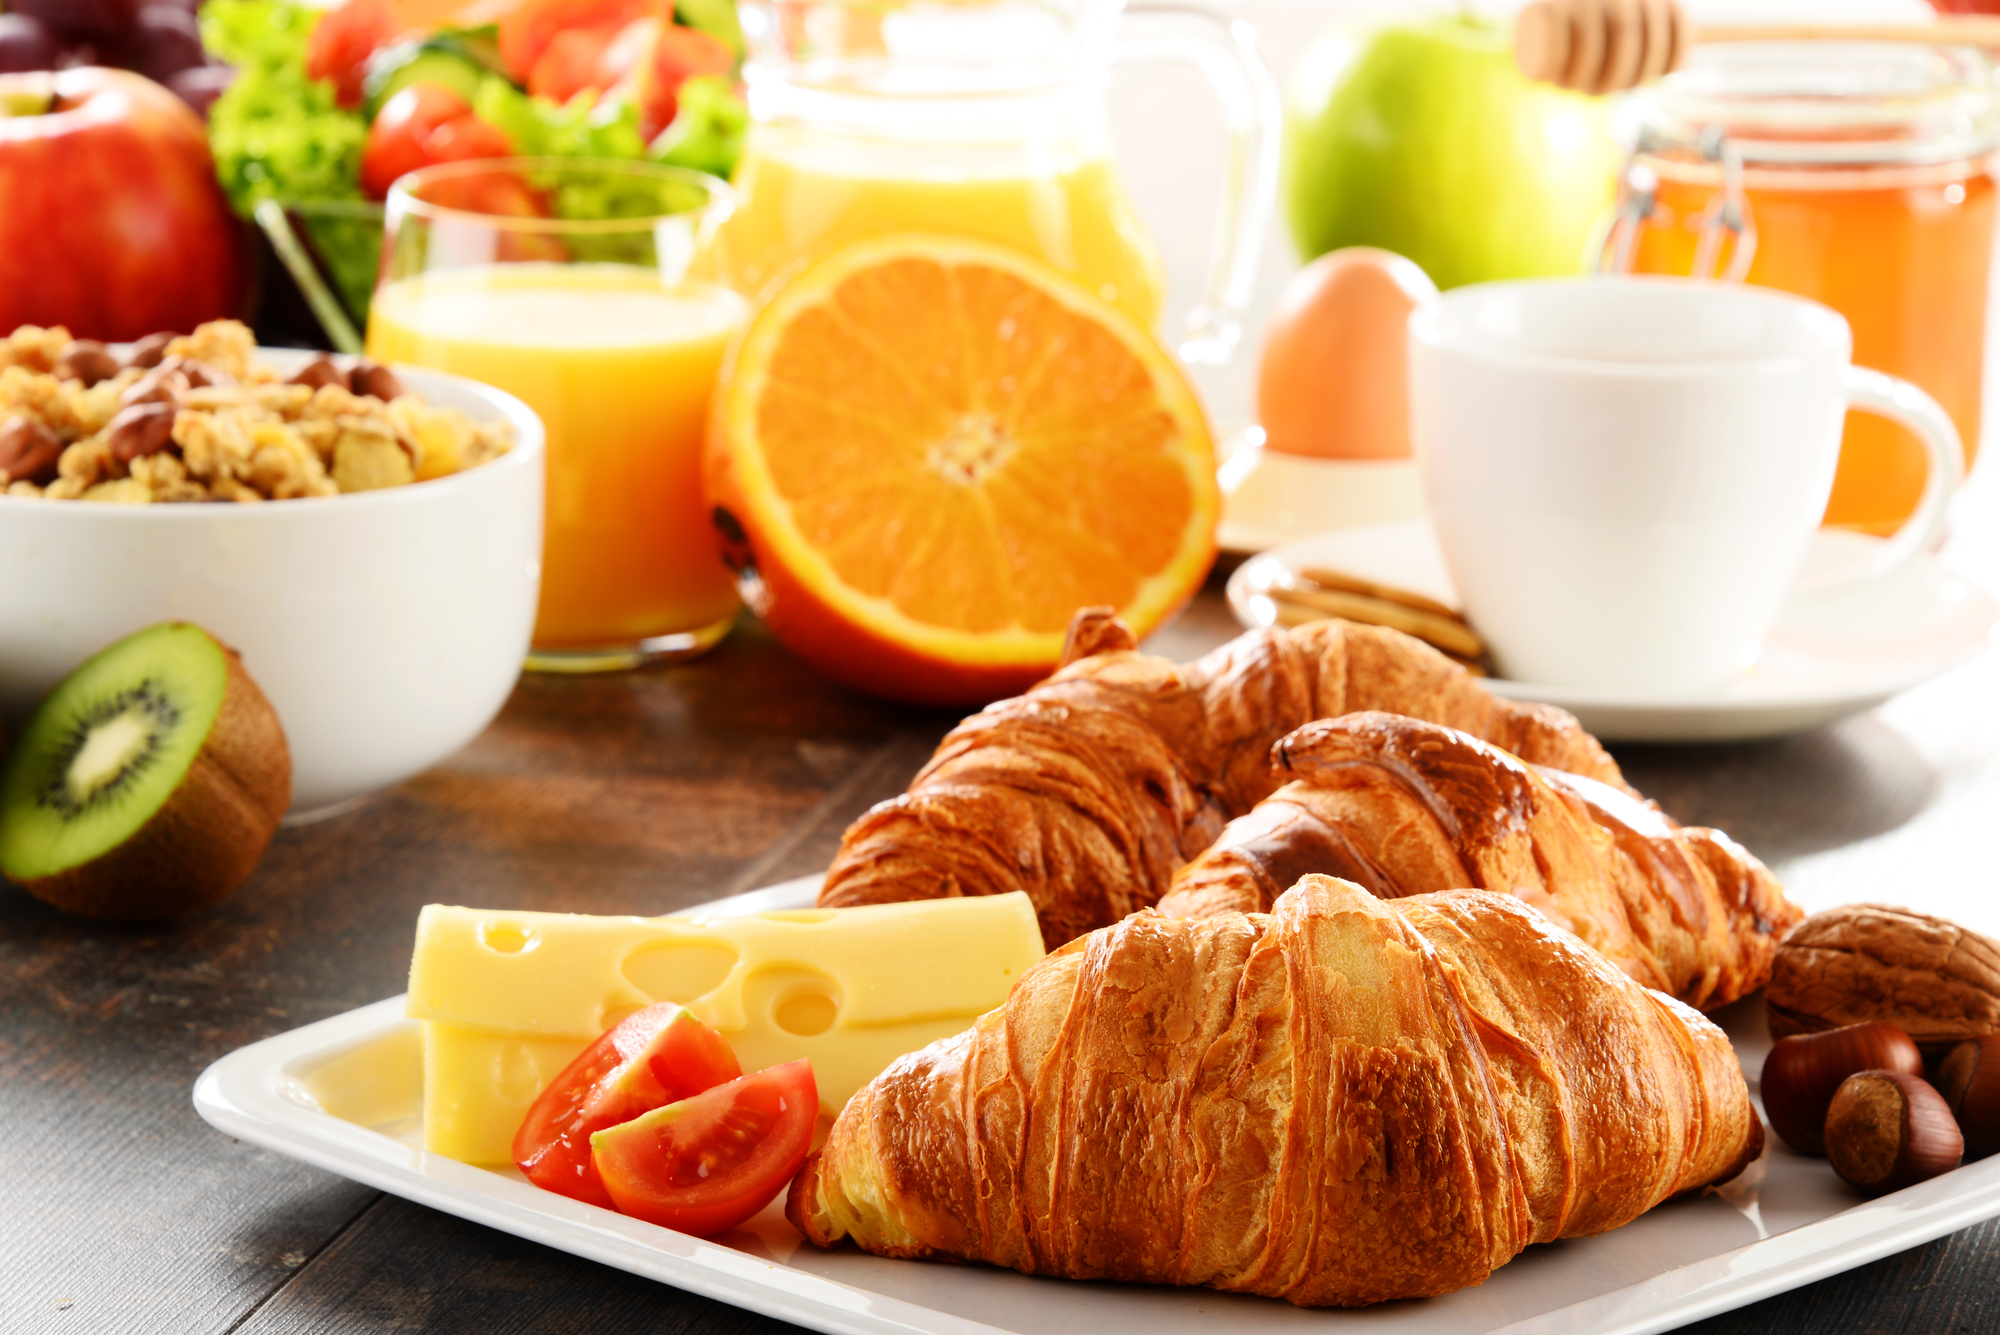 Smuti, jaja, kafa... Šta omiljeni doručak otkriva o vama?